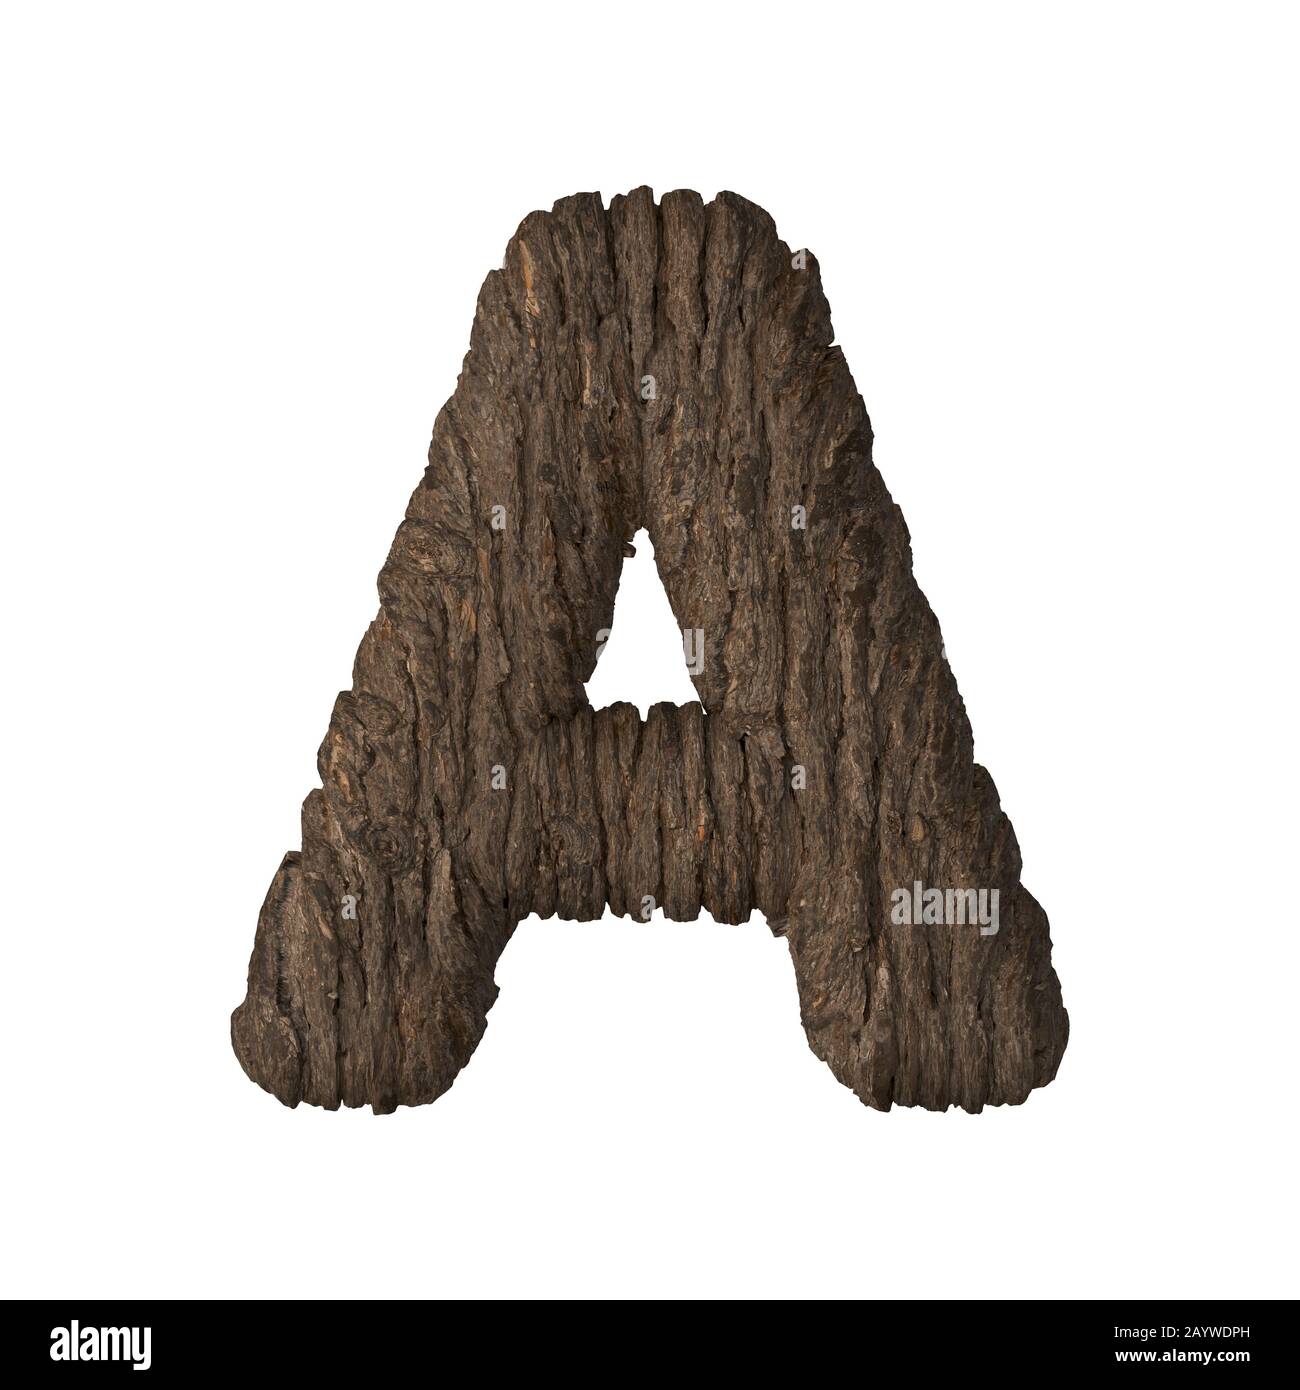 Bark letter A - 3D illustration Stock Photo